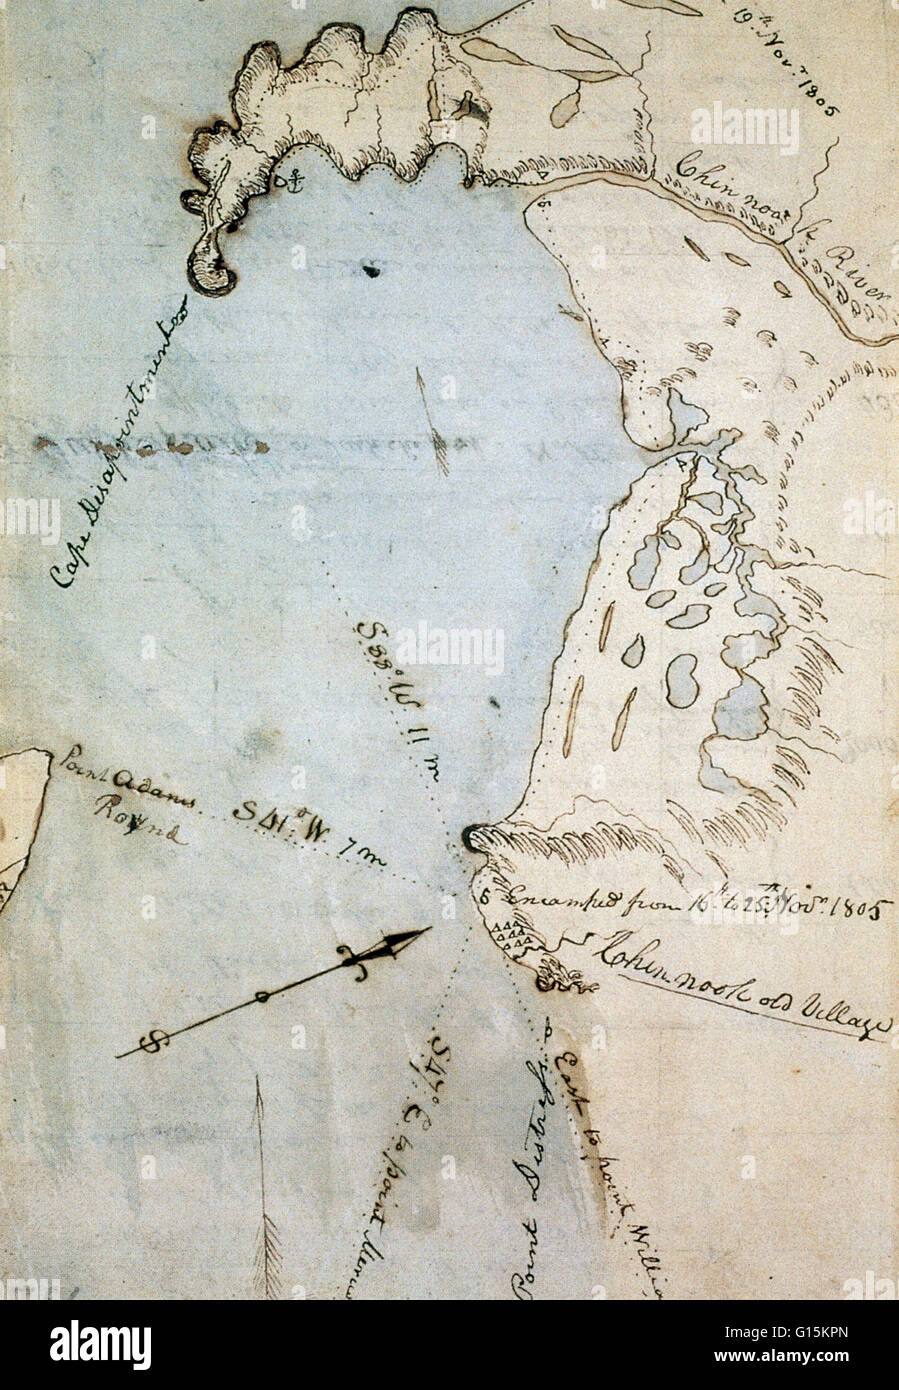 Karte von Grays Bay, im Pazifik und Wahkiakum County, Bundesstaat Washington, November 1805 von William Clark (von Lewis & Clark) gemacht. Die Bucht wurde ursprünglich für den Pazifischen Ozean, was zu den Spitznamen "Cape Enttäuschung" sichtbar auf der oberen verwechselt. Stockfoto